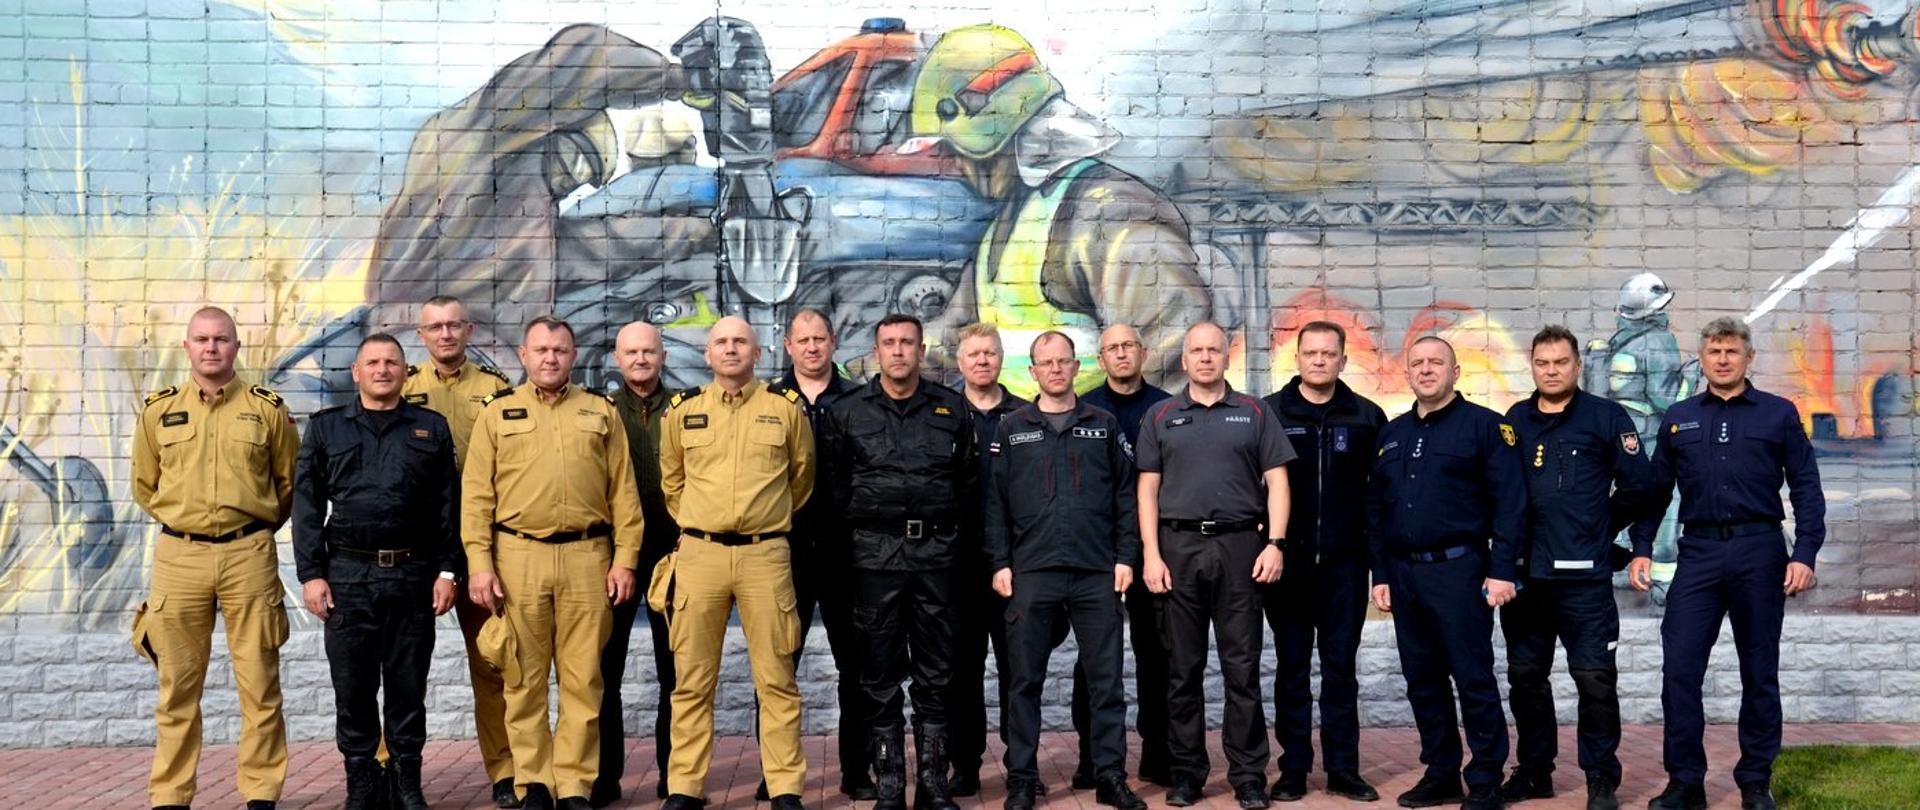 Zdjęcie zrobione na zewnątrz. Przed muralem przedstawiającym działania ratowniczo-gaśnicze w dwuszeregu stoi delegacja strażaków. Wśród nich strażacy Państwowej Straży Pożarnej oraz ratownicy z Ukrainy, Łotwy, Litwy i Estonii.